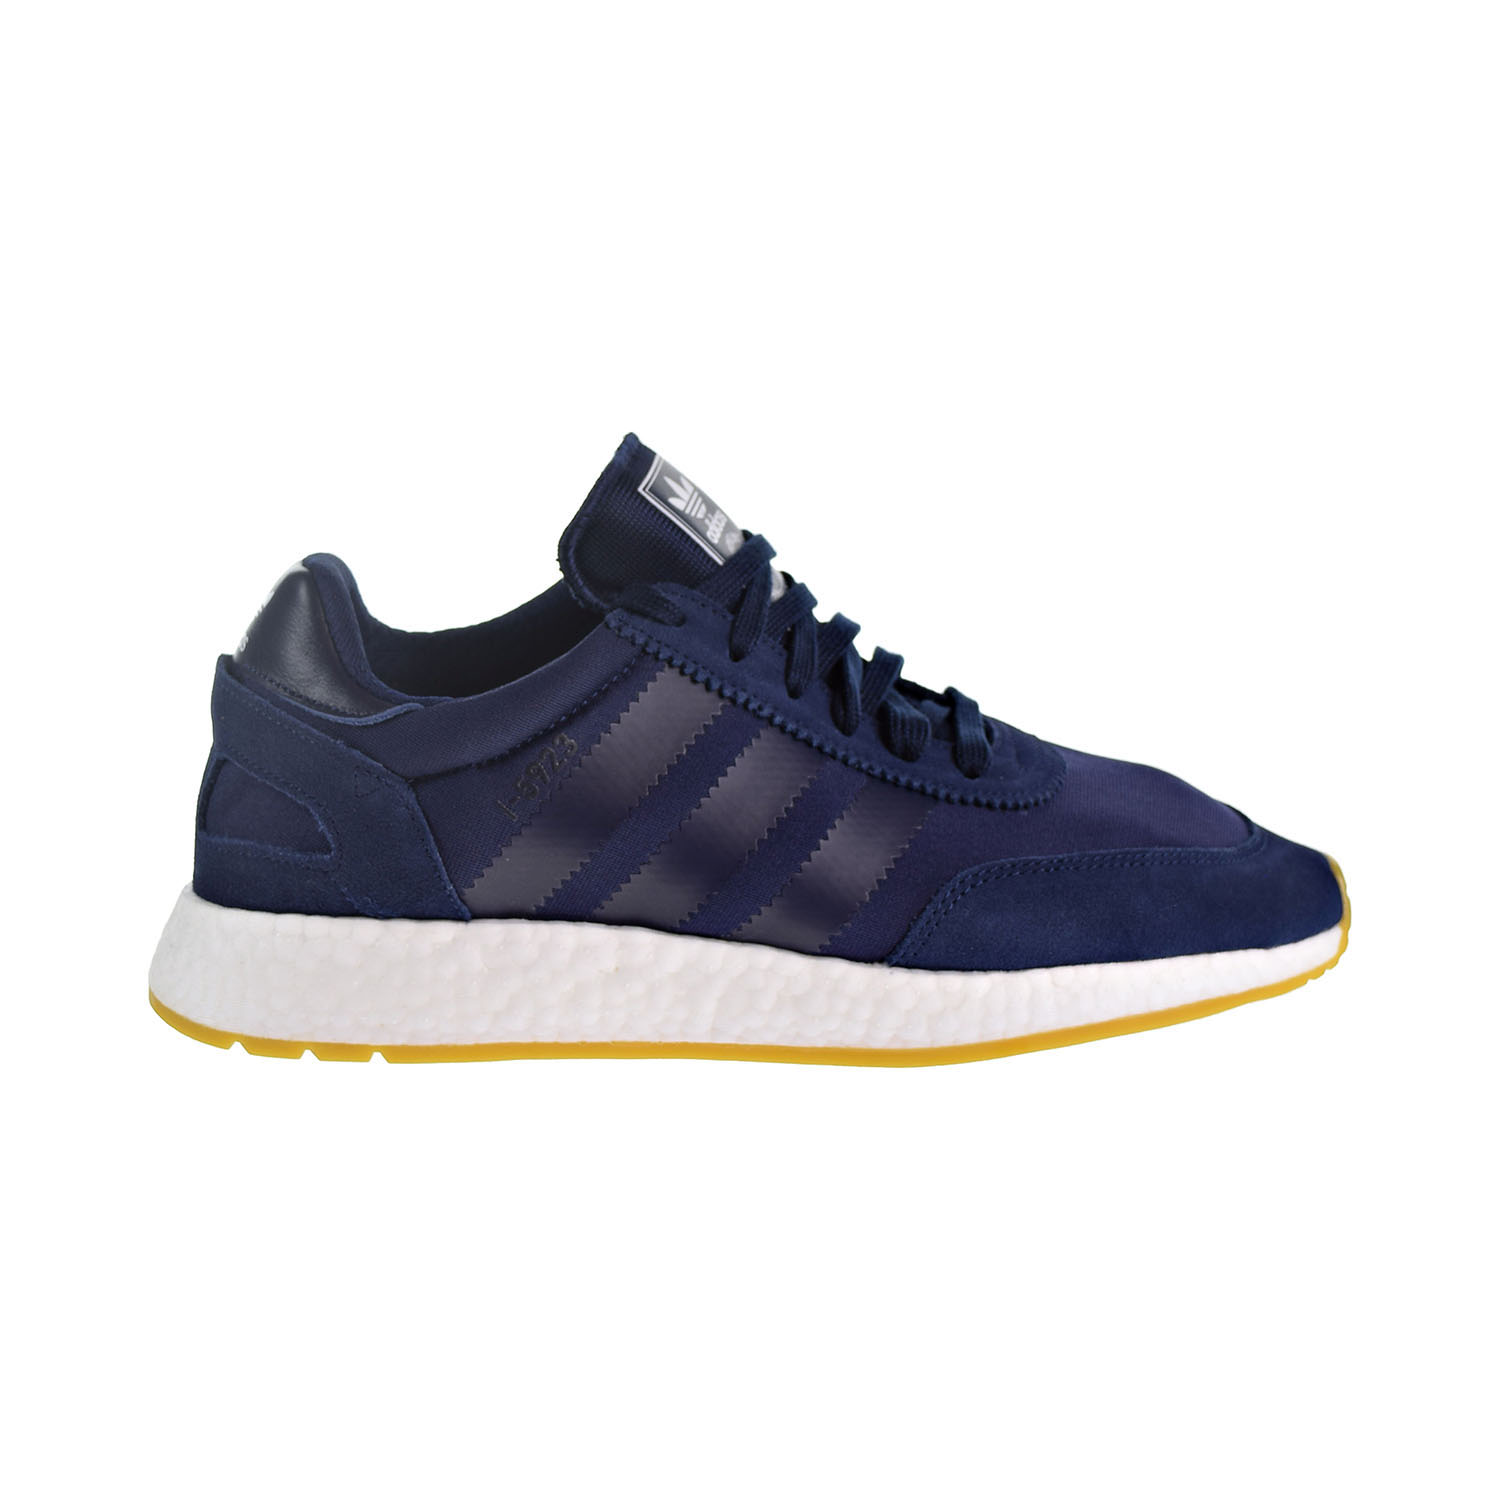 Adidas I-5923 Hombre Zapatos Azul Marino/Blanco D97347 | eBay